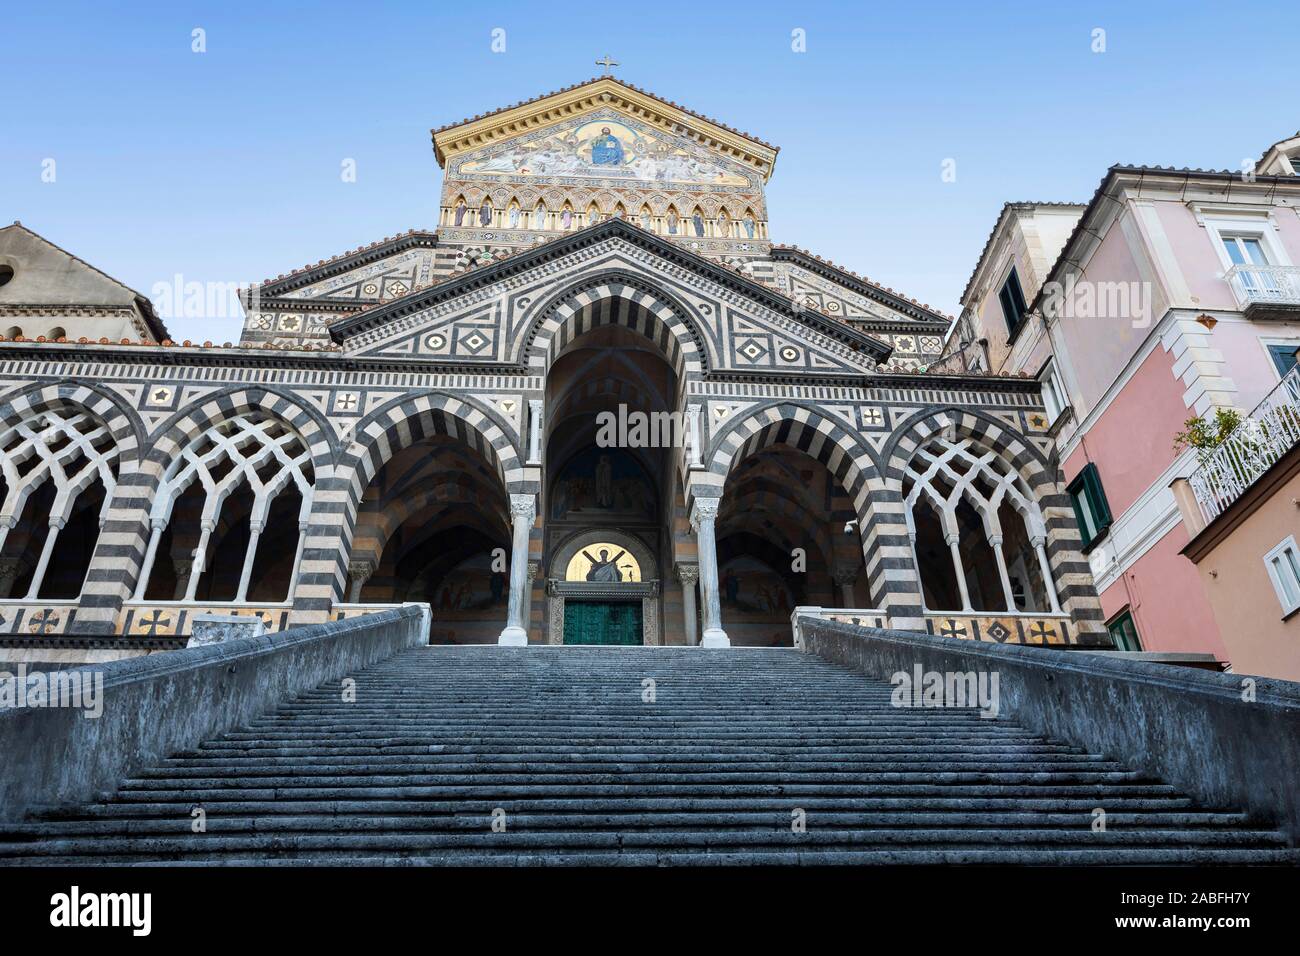 Cattedrale di Sant'Andrea, Duomo di Amalfi, Amalfi, Italia Foto de stock